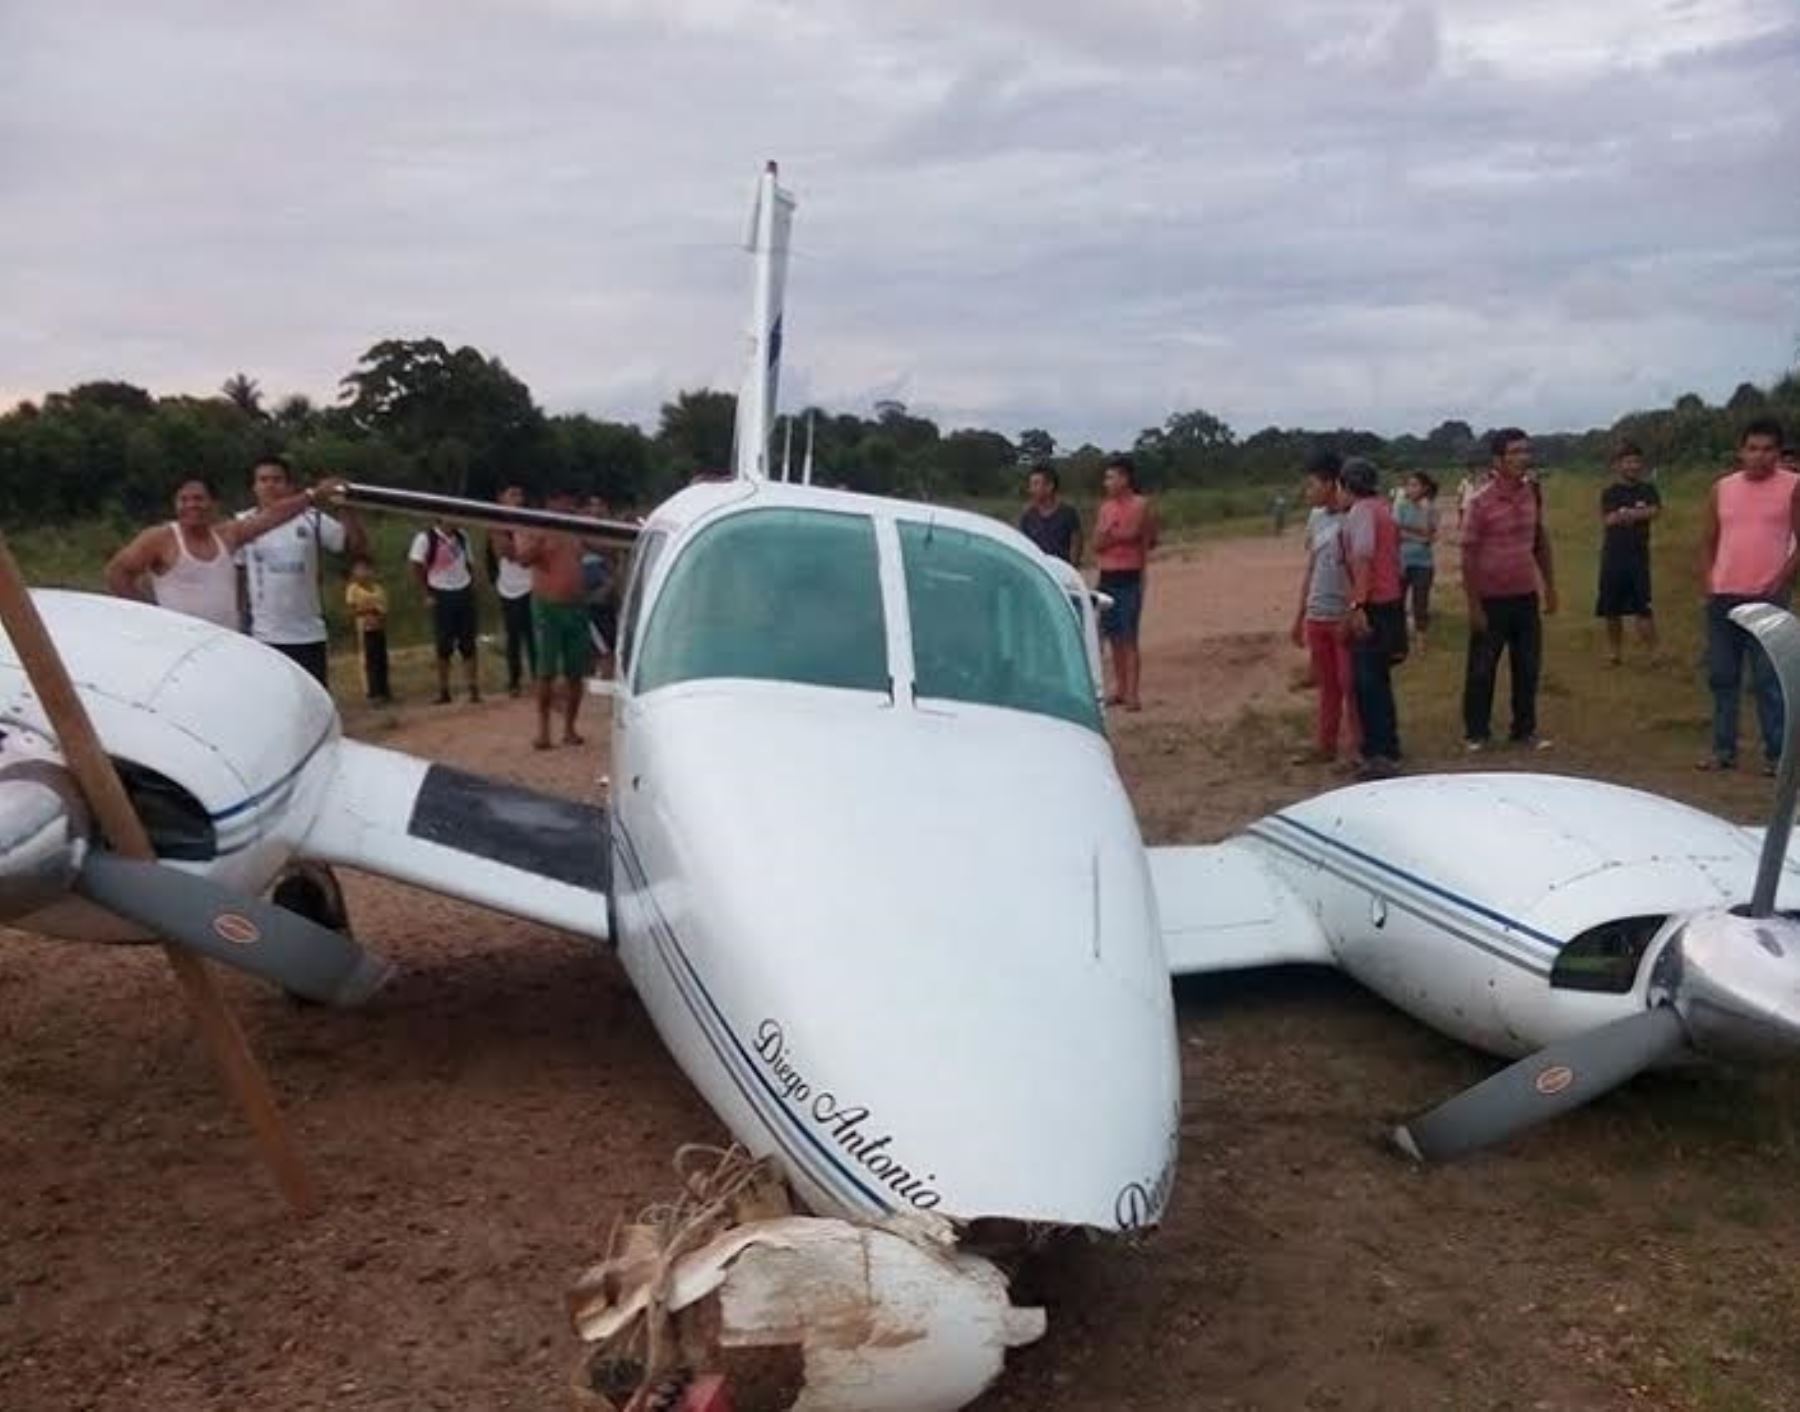 Avioneta sufre incidente al momento de aterrizar en aeródromo de San Lorenzo en Loreto.